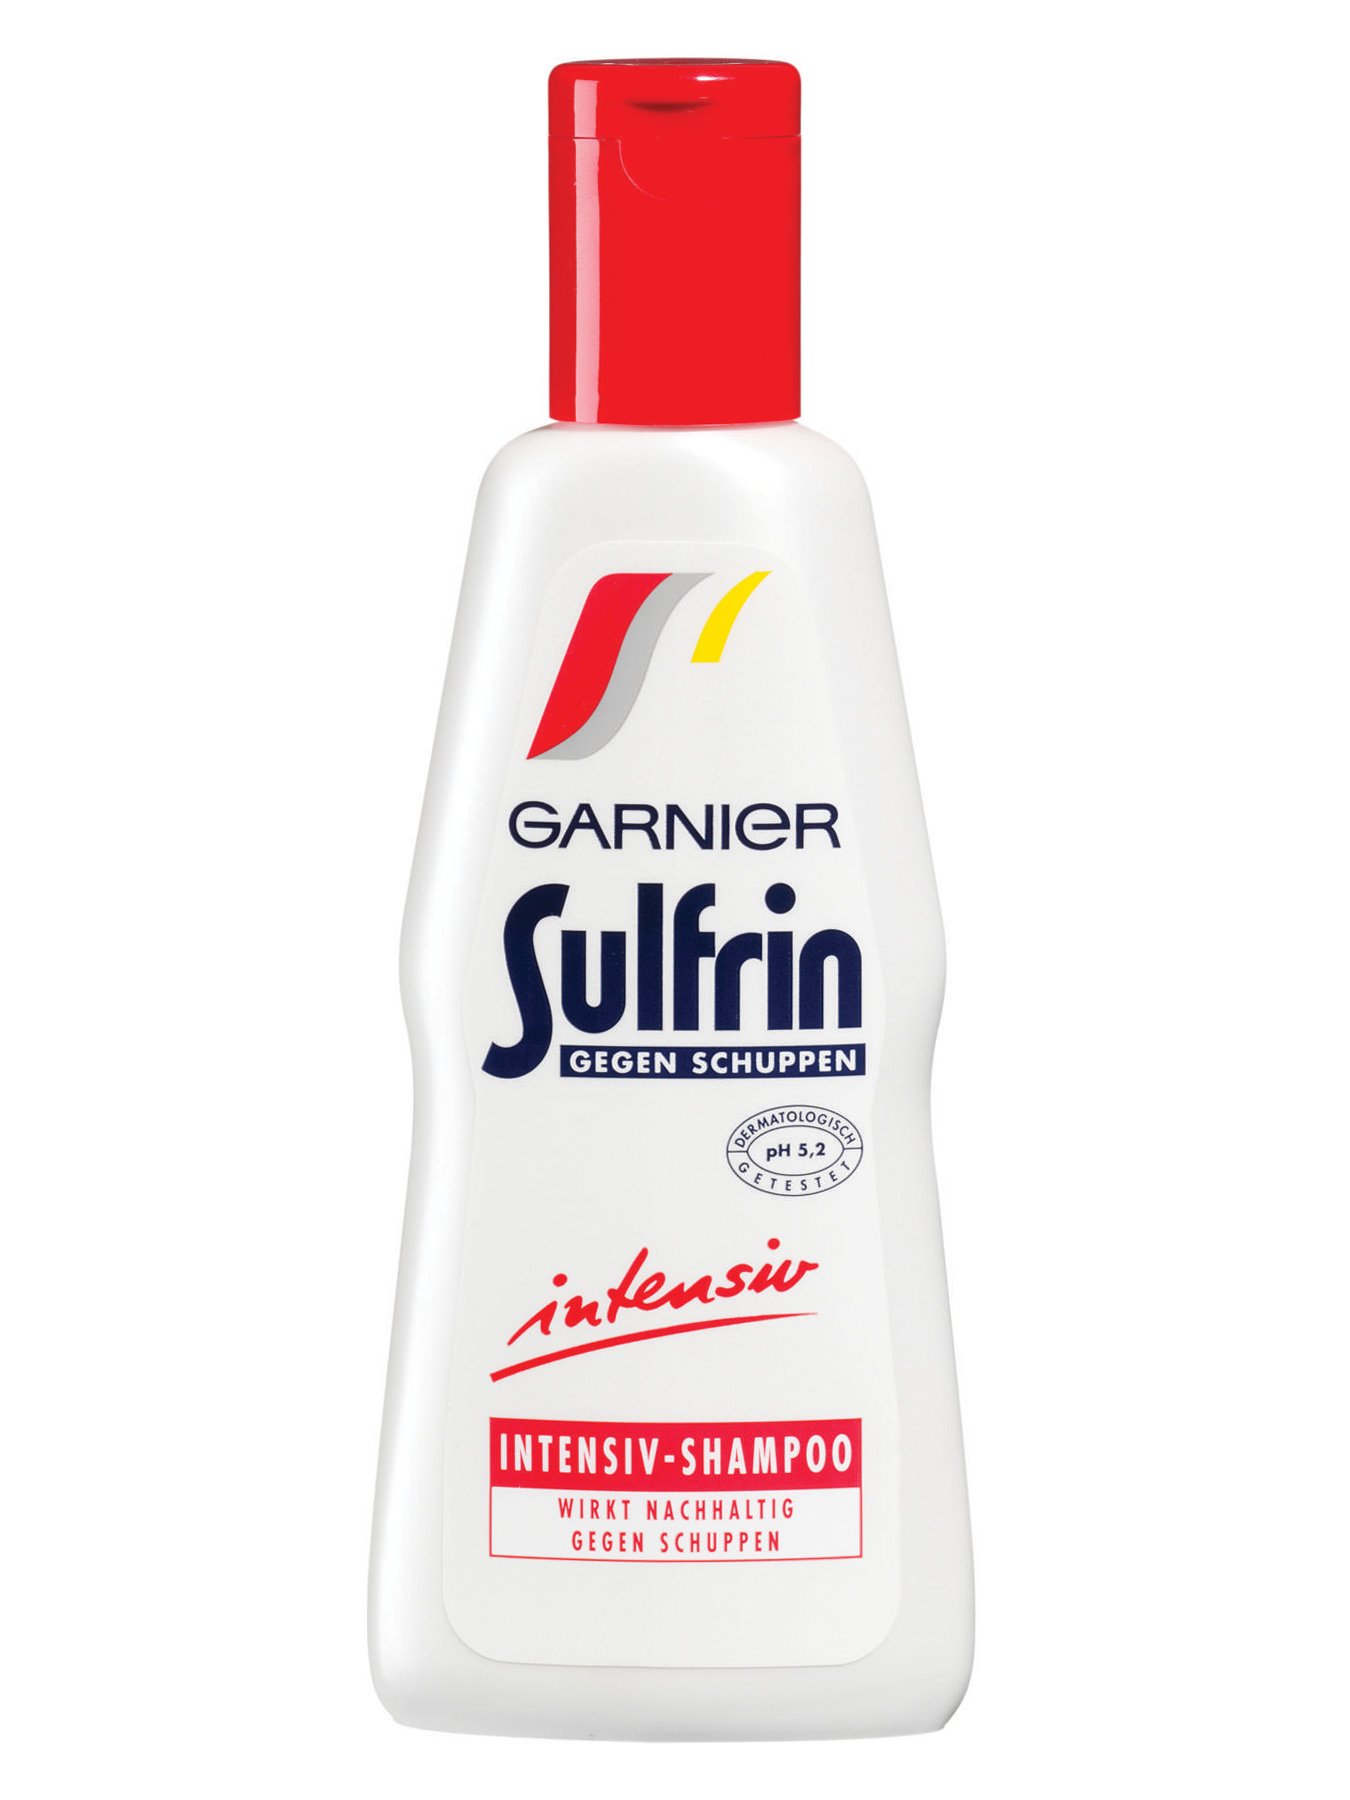 Intensiv-Shampoo-Sulfrin-Gegen-Schuppen-250ml-Vorderseite-Garnier-Deutschland-gr